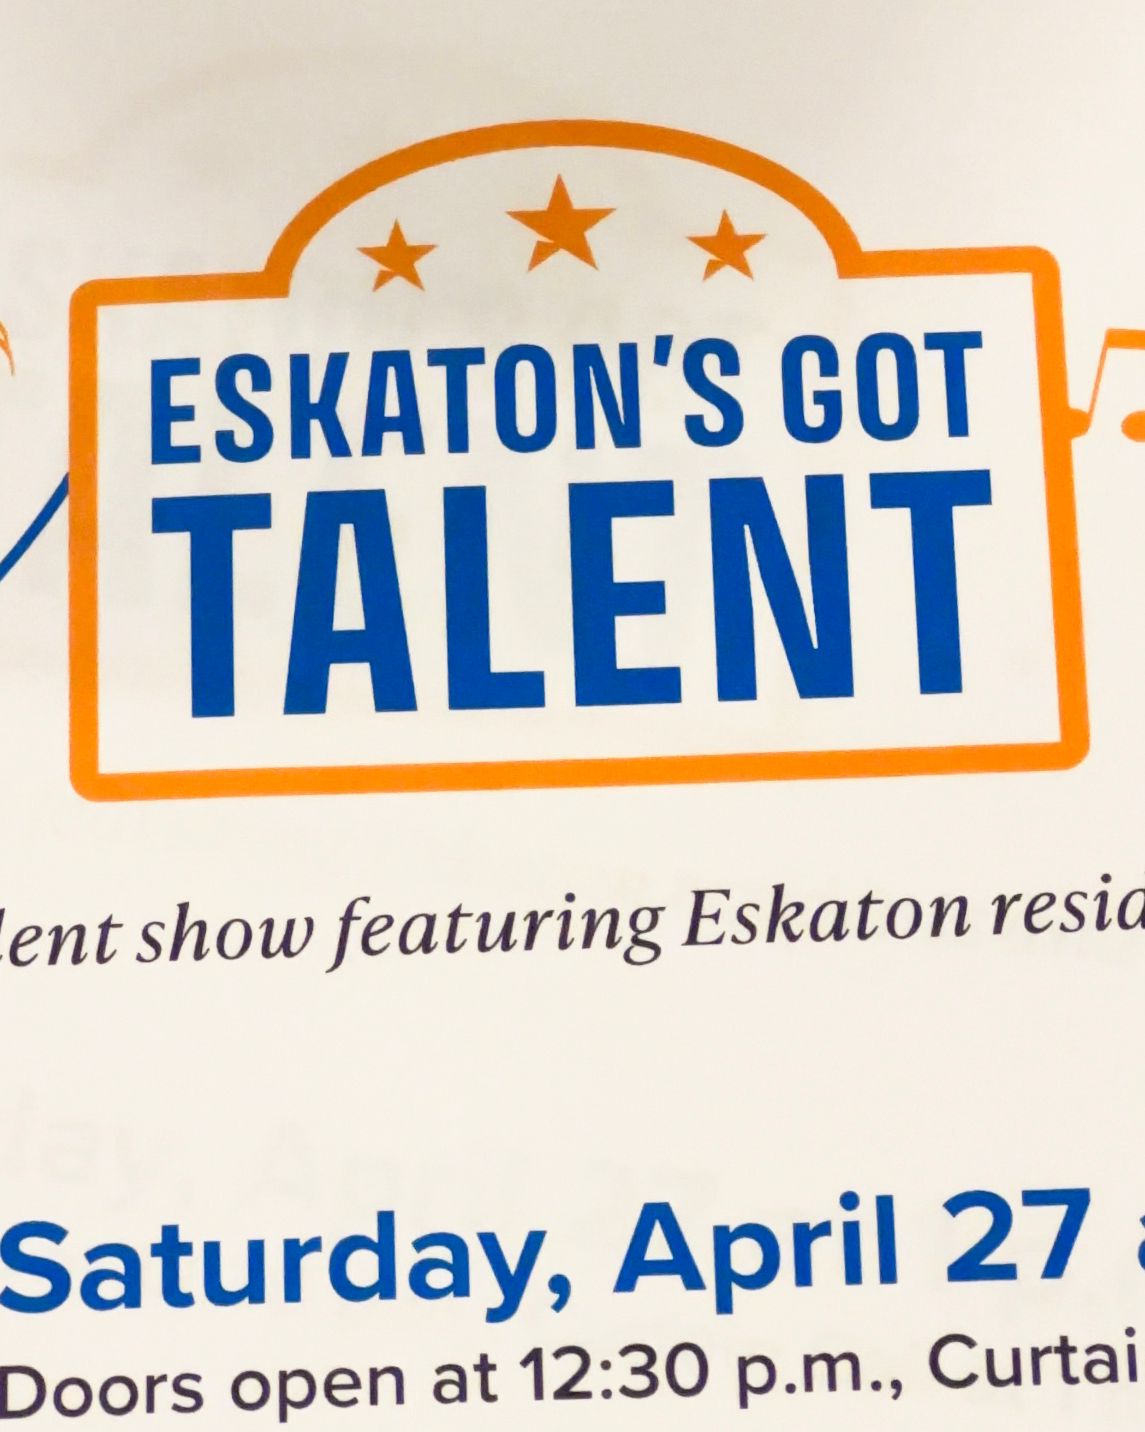 Eskaton's Got Talent